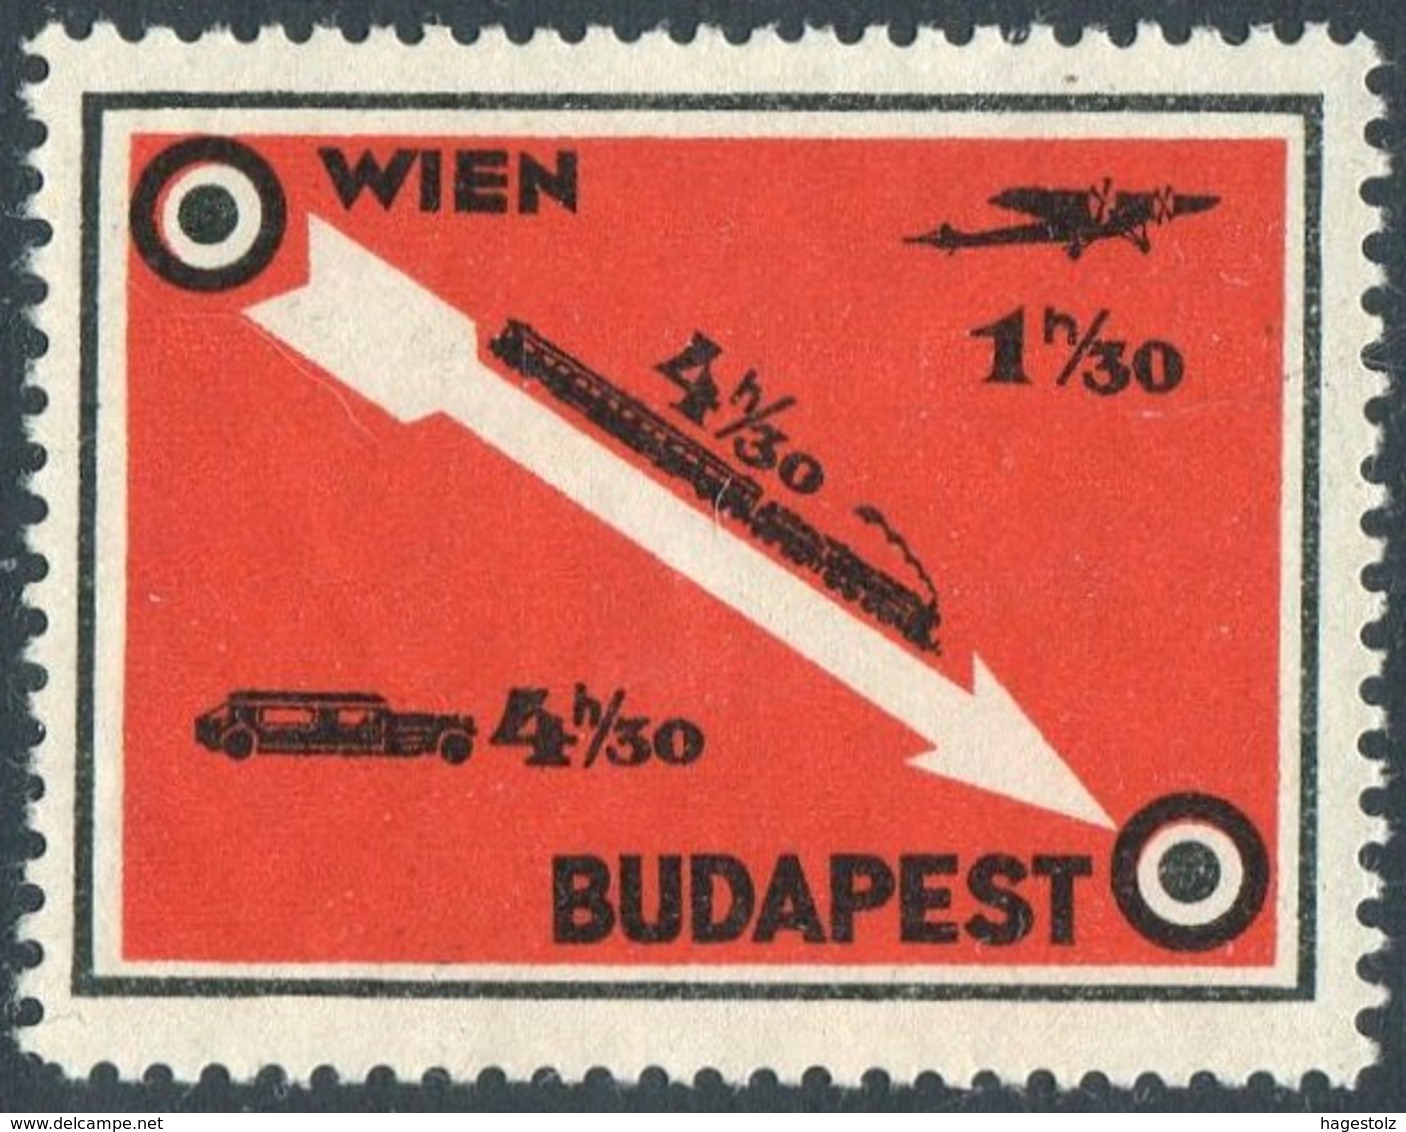 Austria Hungary WIEN - BUDAPEST Railway Eisenbahn TRAIN Zug CAR Airplane Poster Vignette Cinderella Österreich Ungarn - Trains